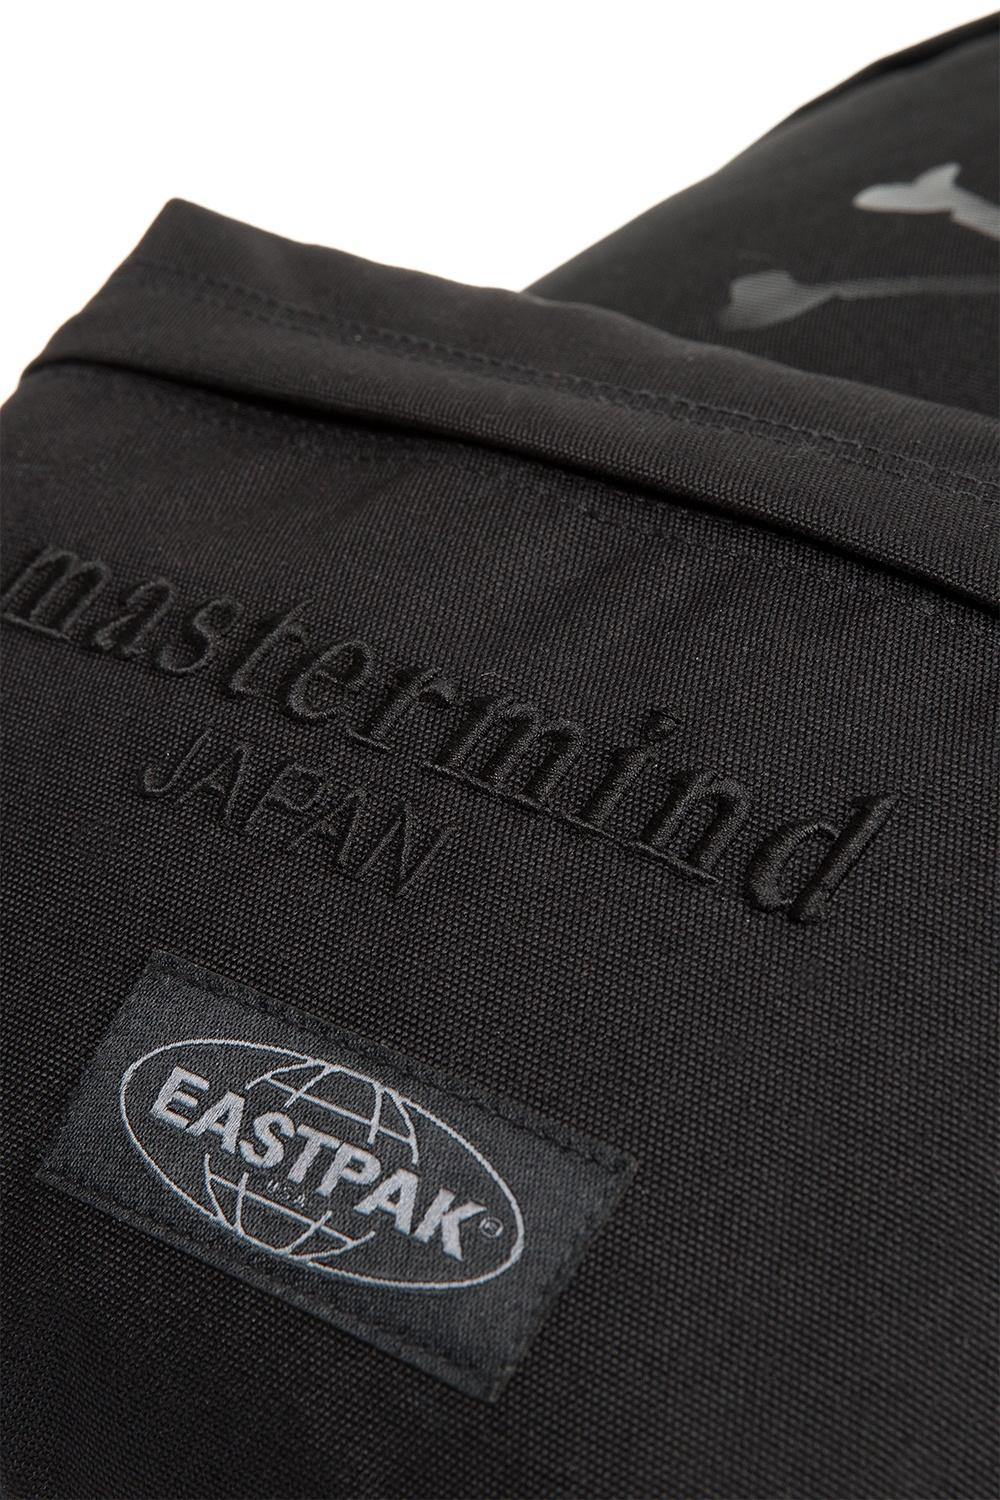 Eastpak Leather X Mastermind Black for Men | Lyst